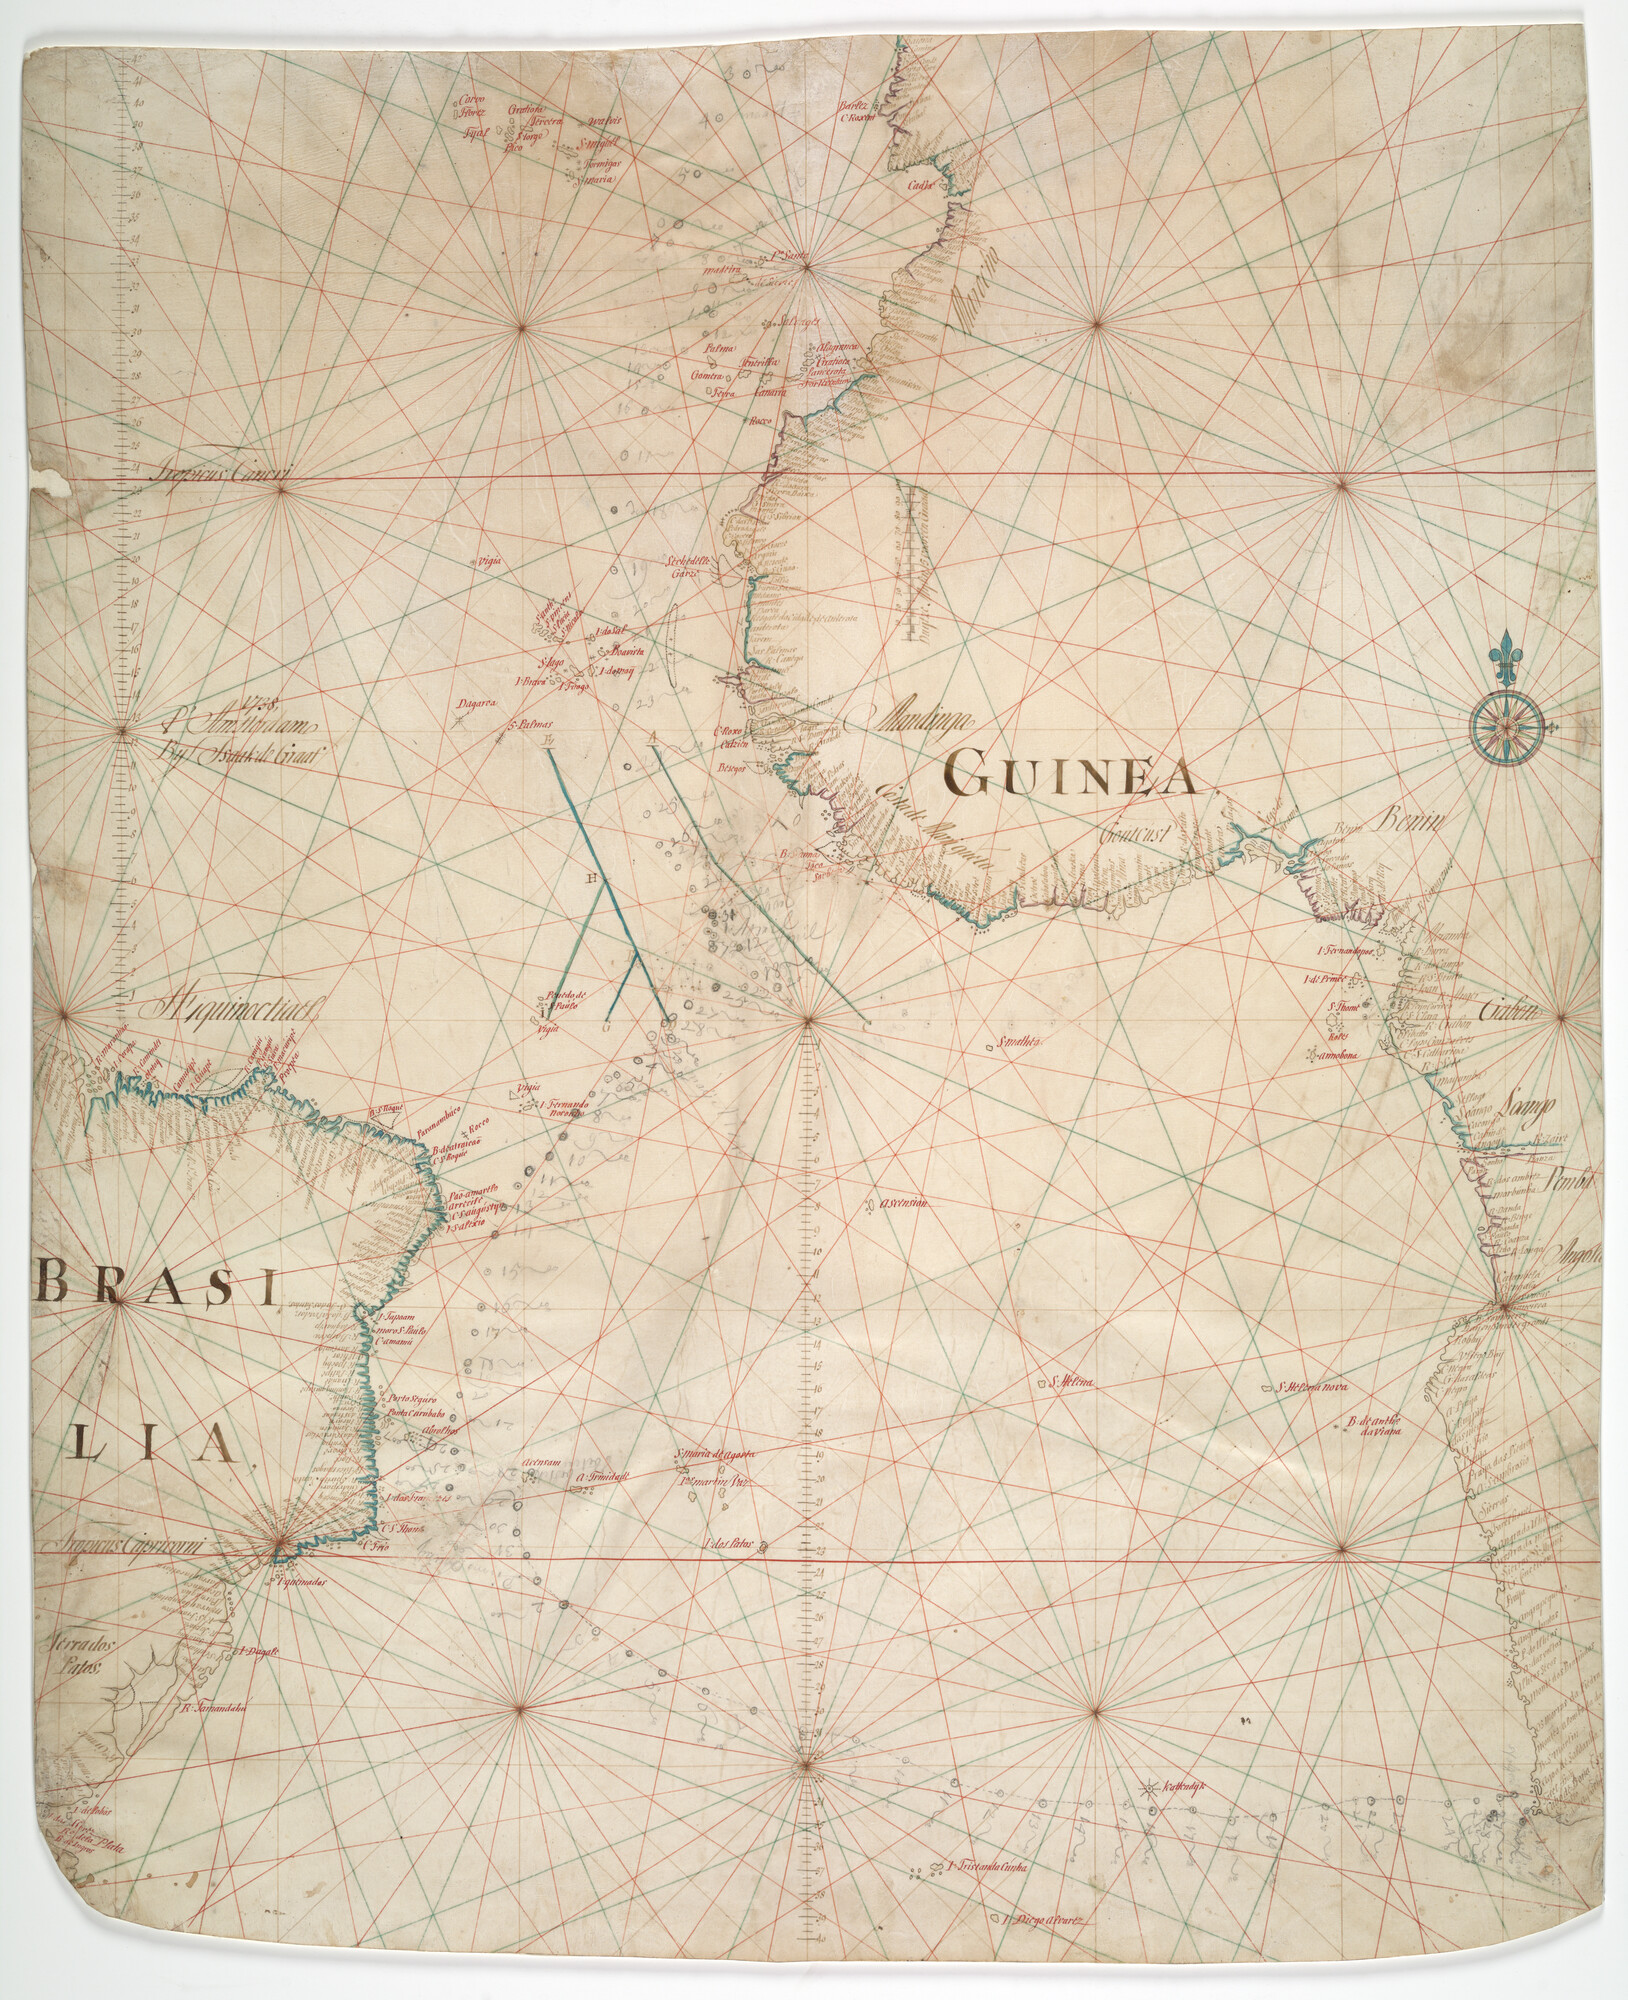 A.5713; Zeekaart door Isaak de Graaf, Amsterdam, 1738 van de Zuid-Atlantische Oceaan; perkamentkaart